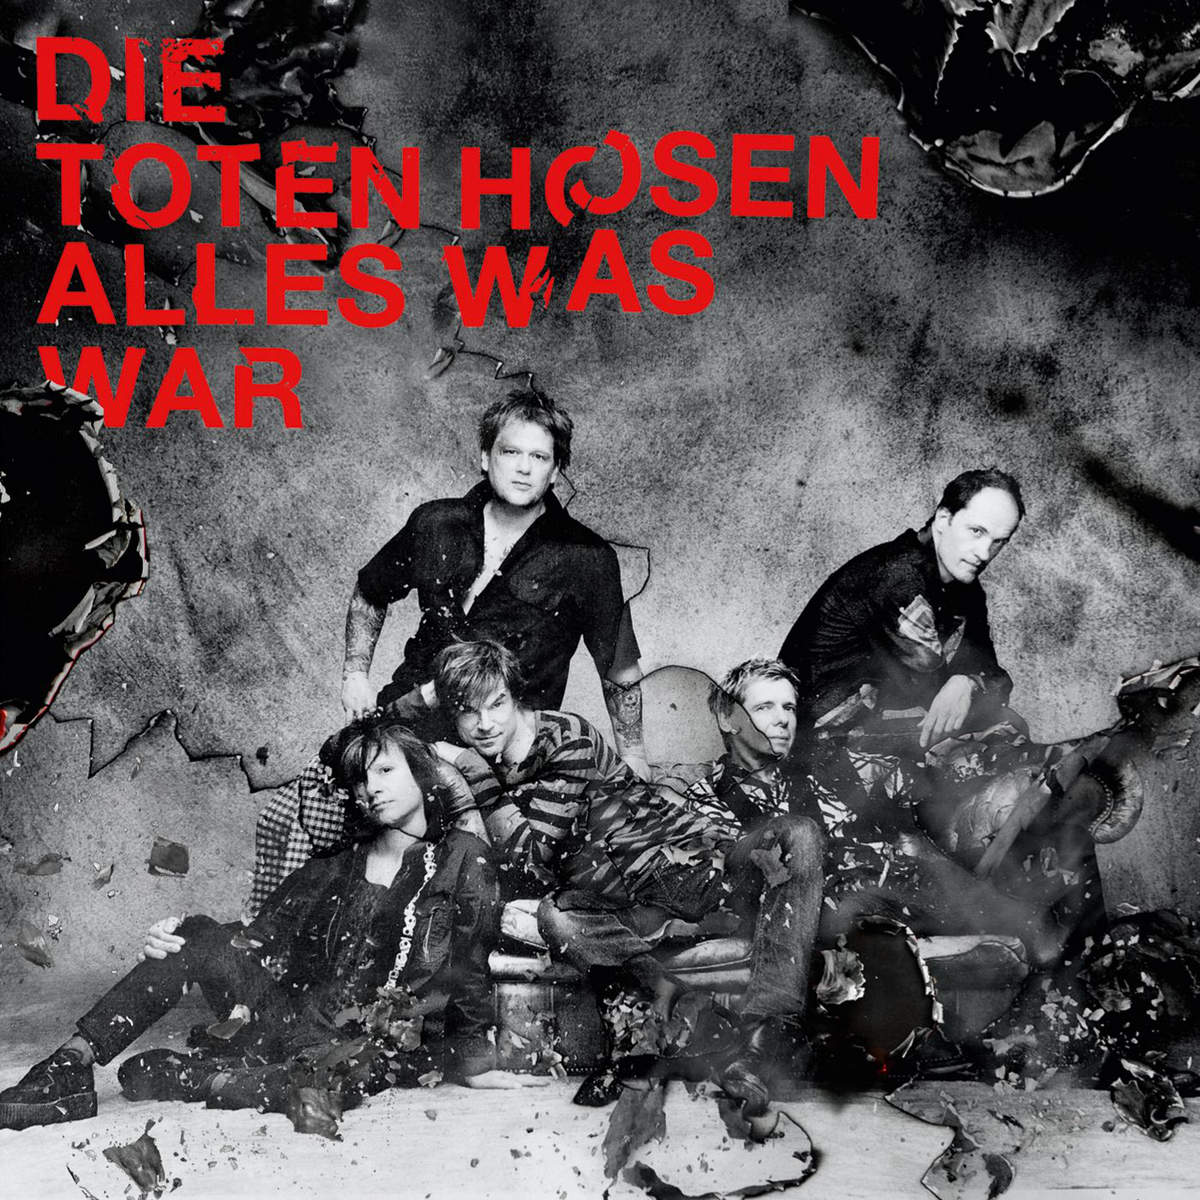 Die Toten Hosen, est-ce que c’est encore du punk rock ?